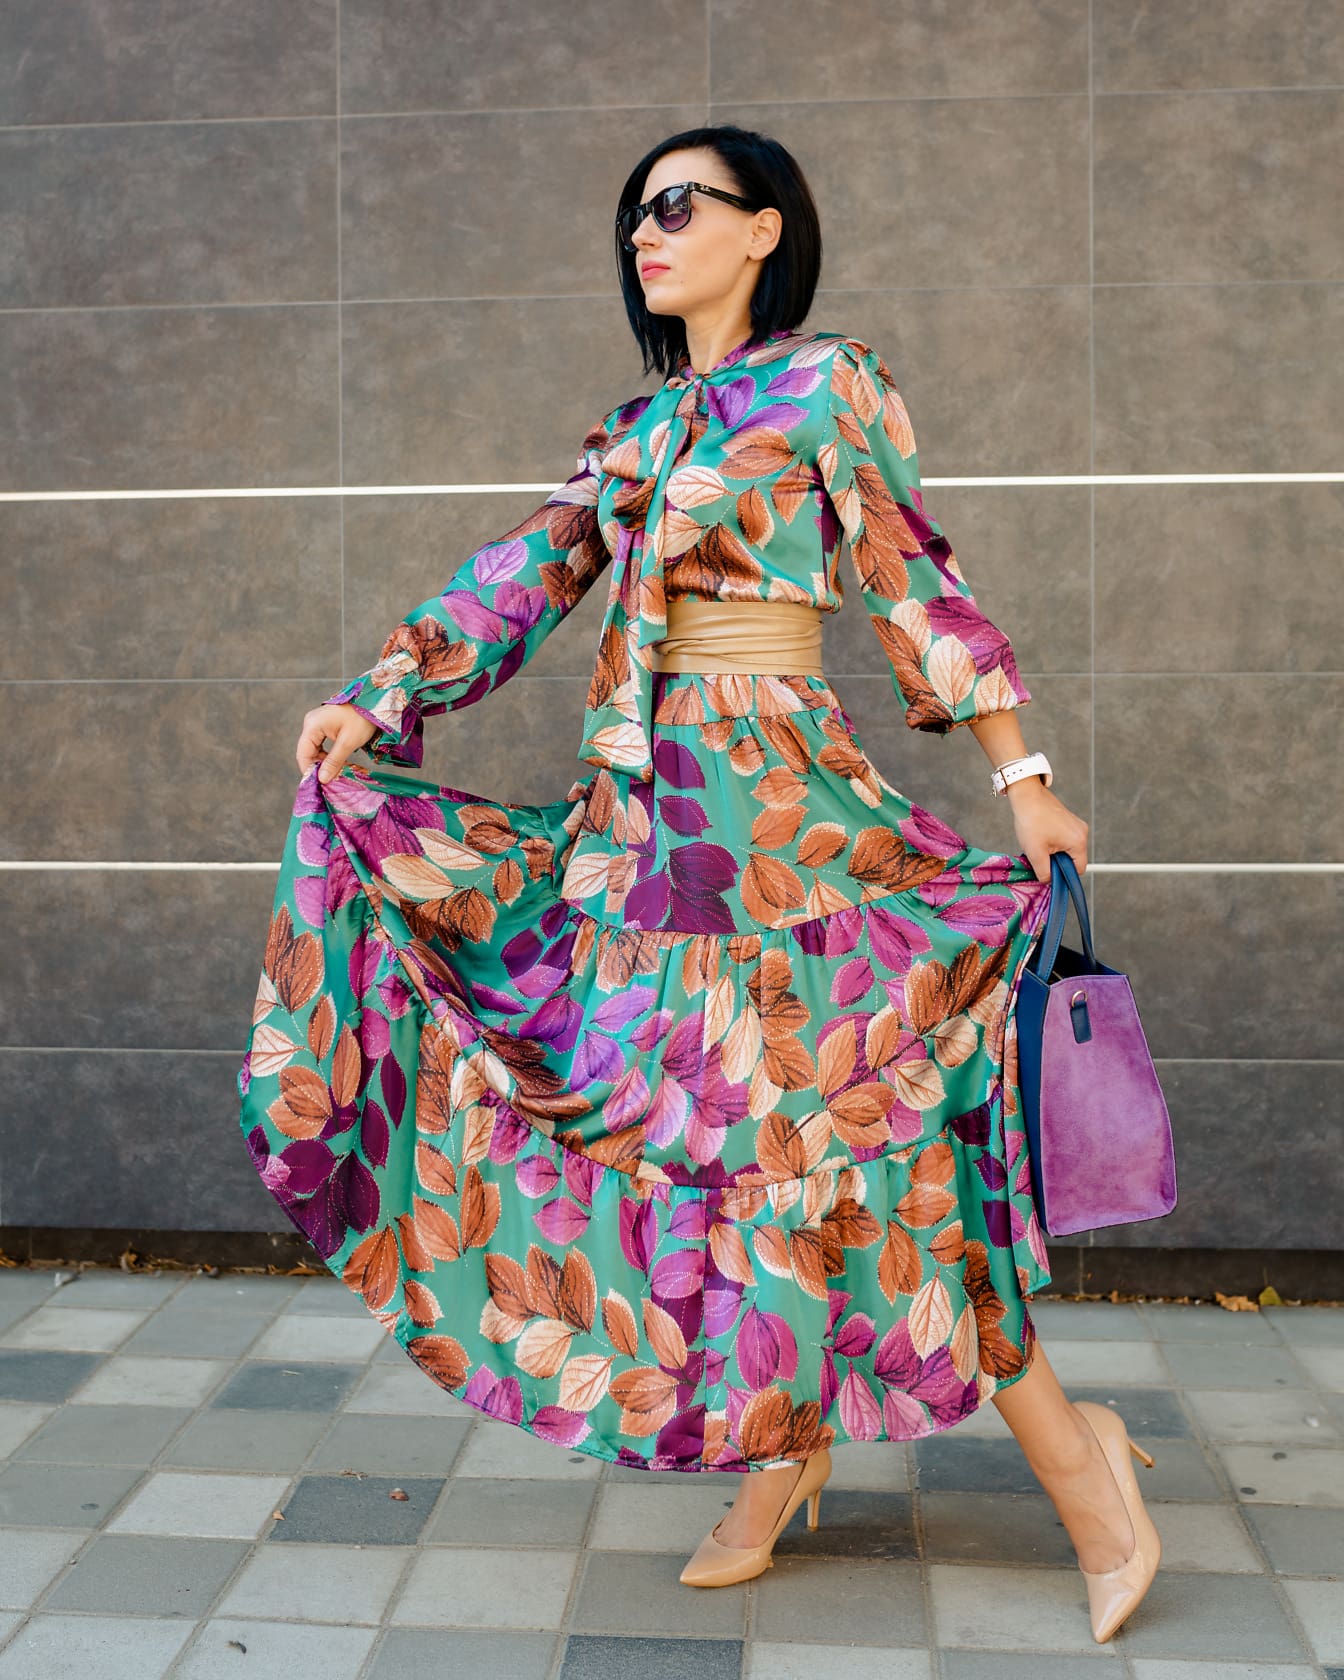 穿着优雅的彩色丝绸连衣裙和紫色手提包的女商人